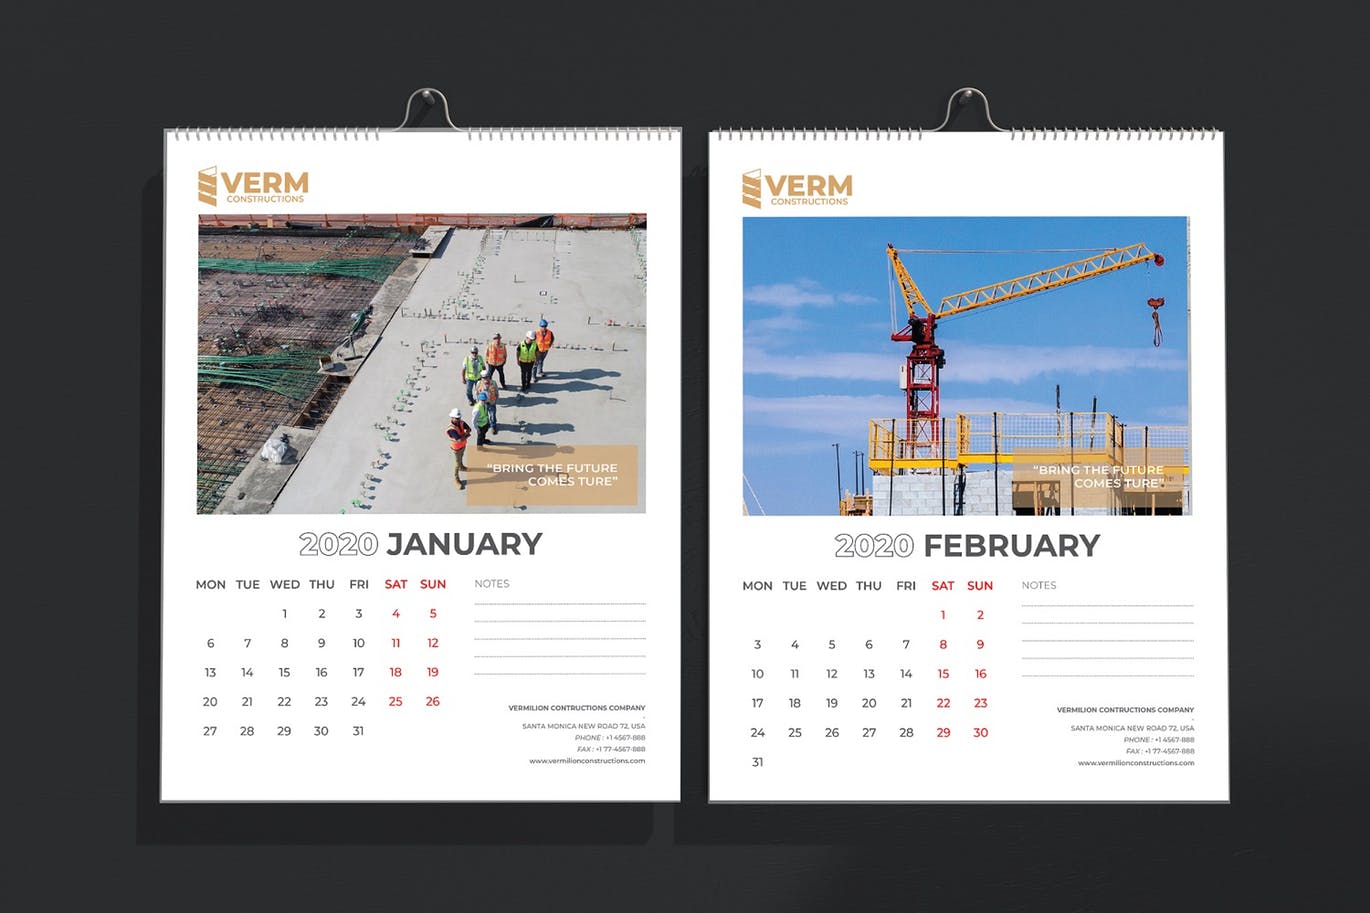 2020年建筑主题台历&挂墙日历表设计模板 Construction Wall & Table Calendar 2020插图(3)